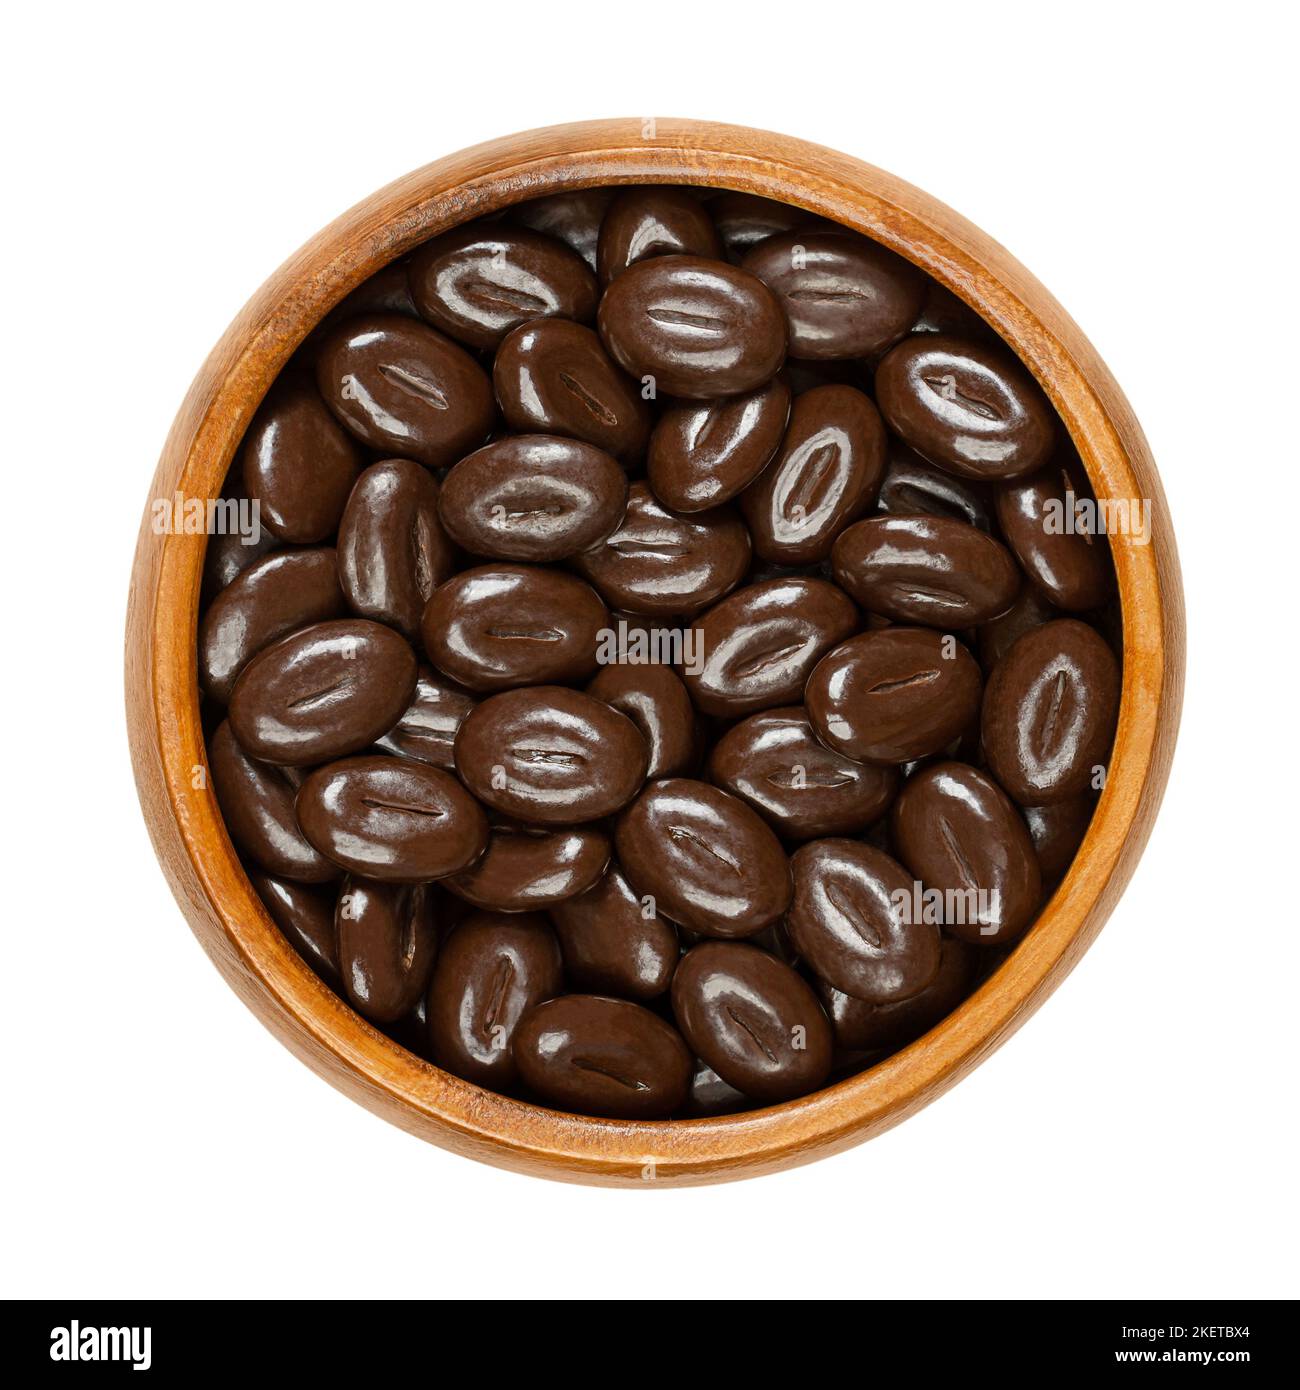 Mokka-Bohnen aus dunkler Schokolade, in einer Holzschüssel. Bonbons aus einer Mischung aus Kaffeebohnen-Geschmack mit dunkler Schokolade, in Form von Kaffeebohnen. Stockfoto